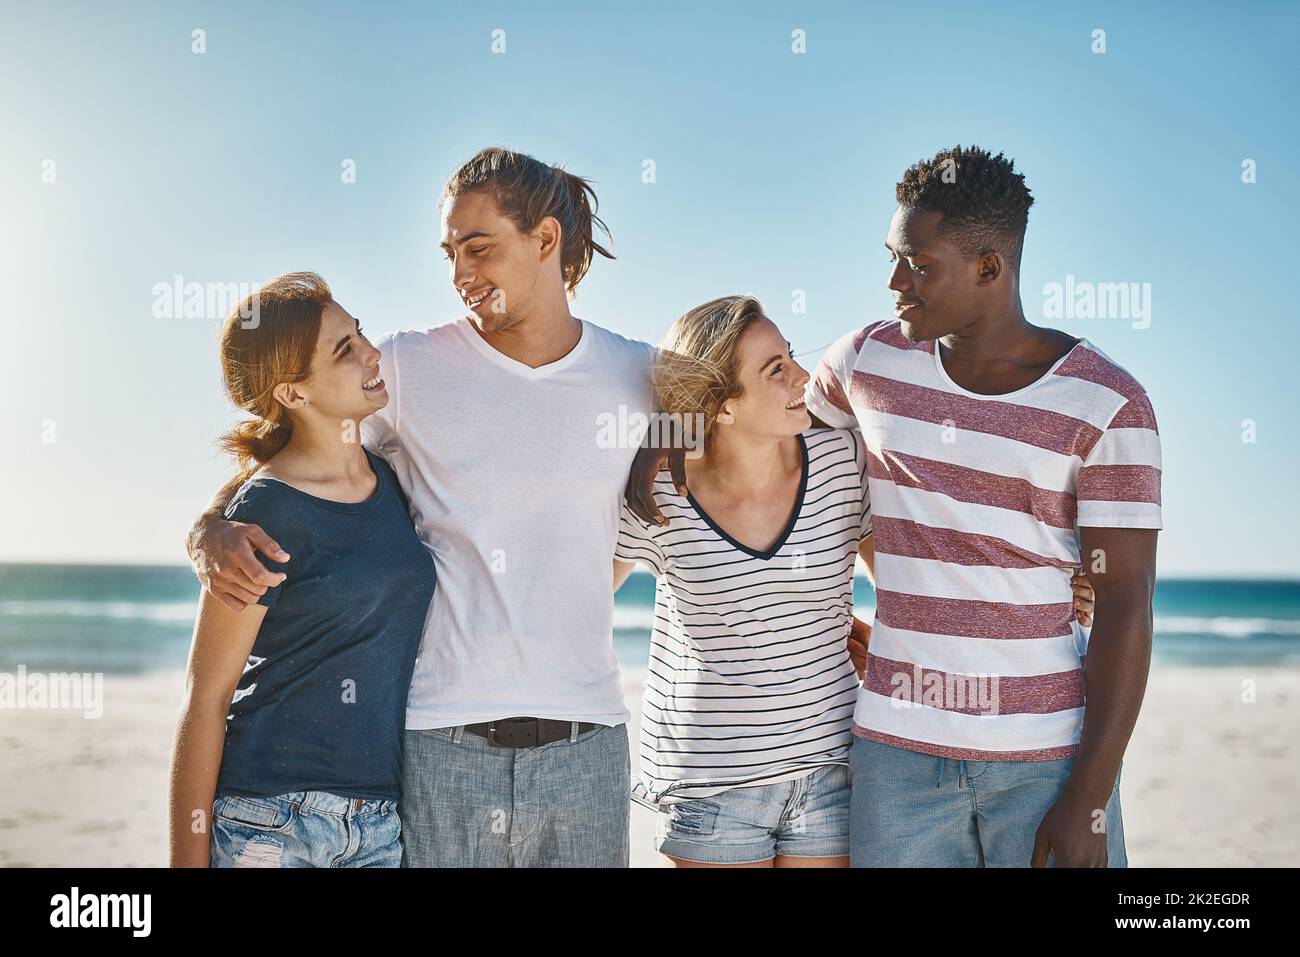 Pouvons-nous faire chaque jour un jour de plage. Photo d'un groupe de jeunes amis heureux posant sur la plage ensemble. Banque D'Images